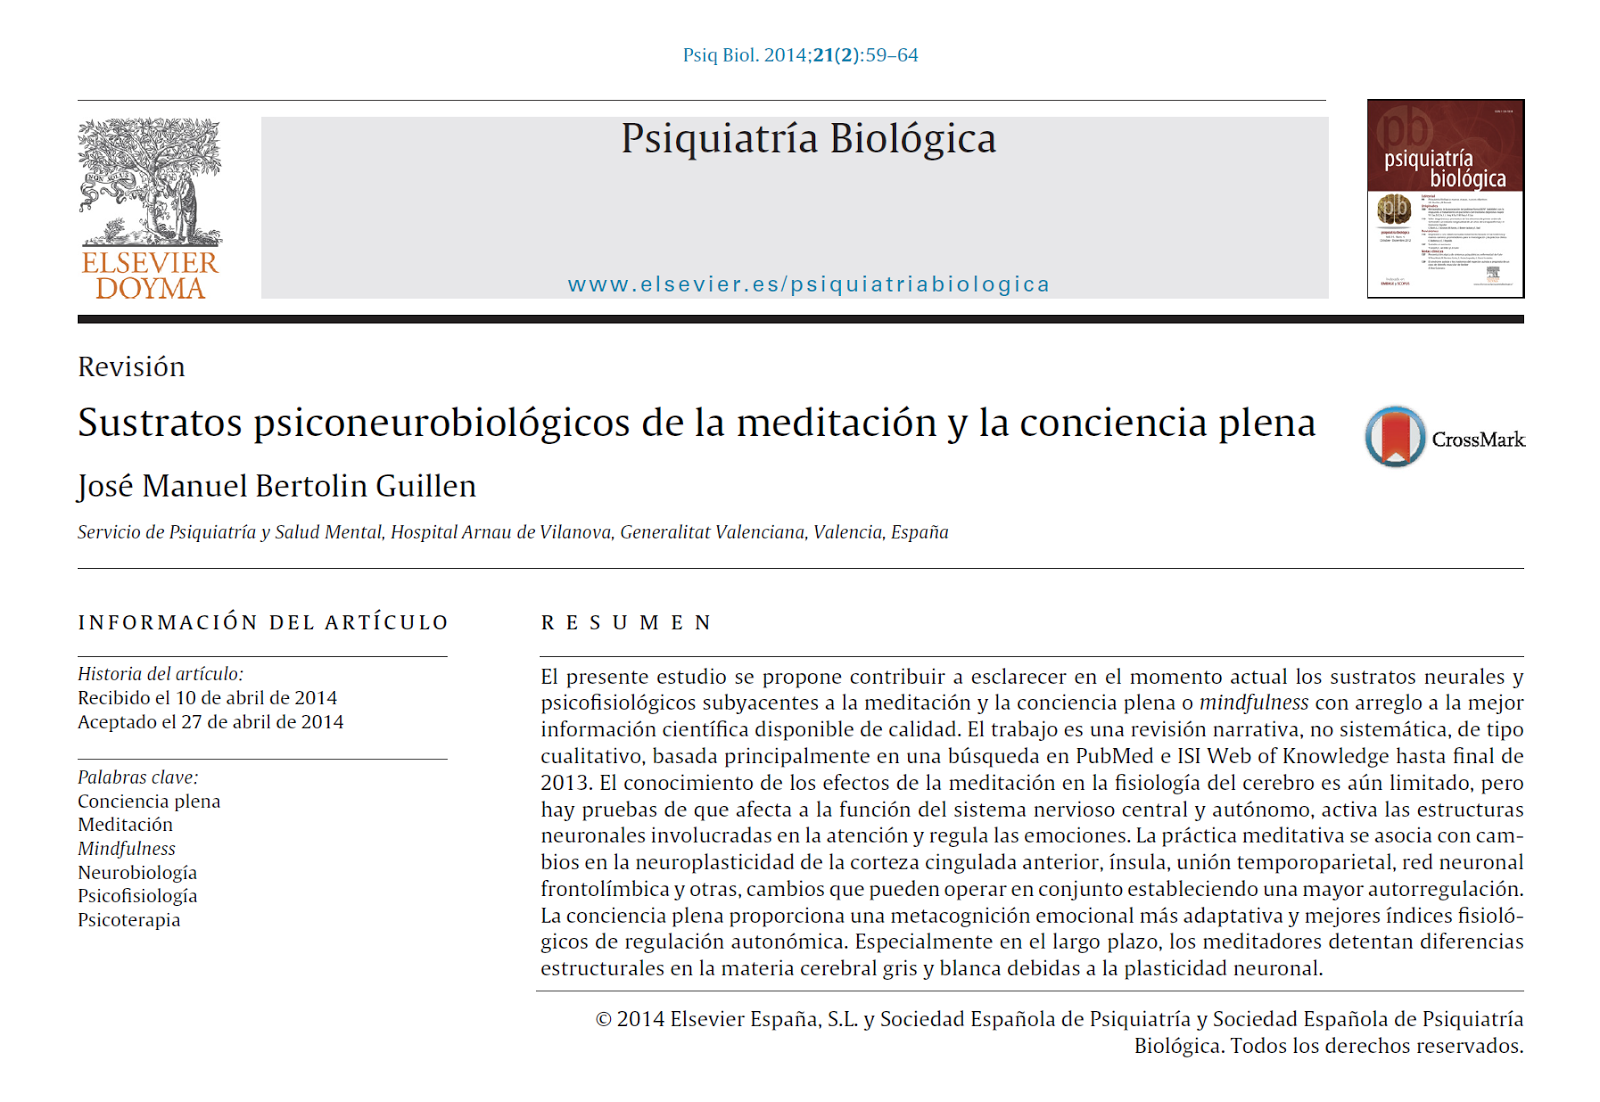 http://zl.elsevier.es/es/revista/psiquiatria-biologica-46/articulo/sustratos-psiconeurobiologicos-meditacion-conciencia-plena-90338095